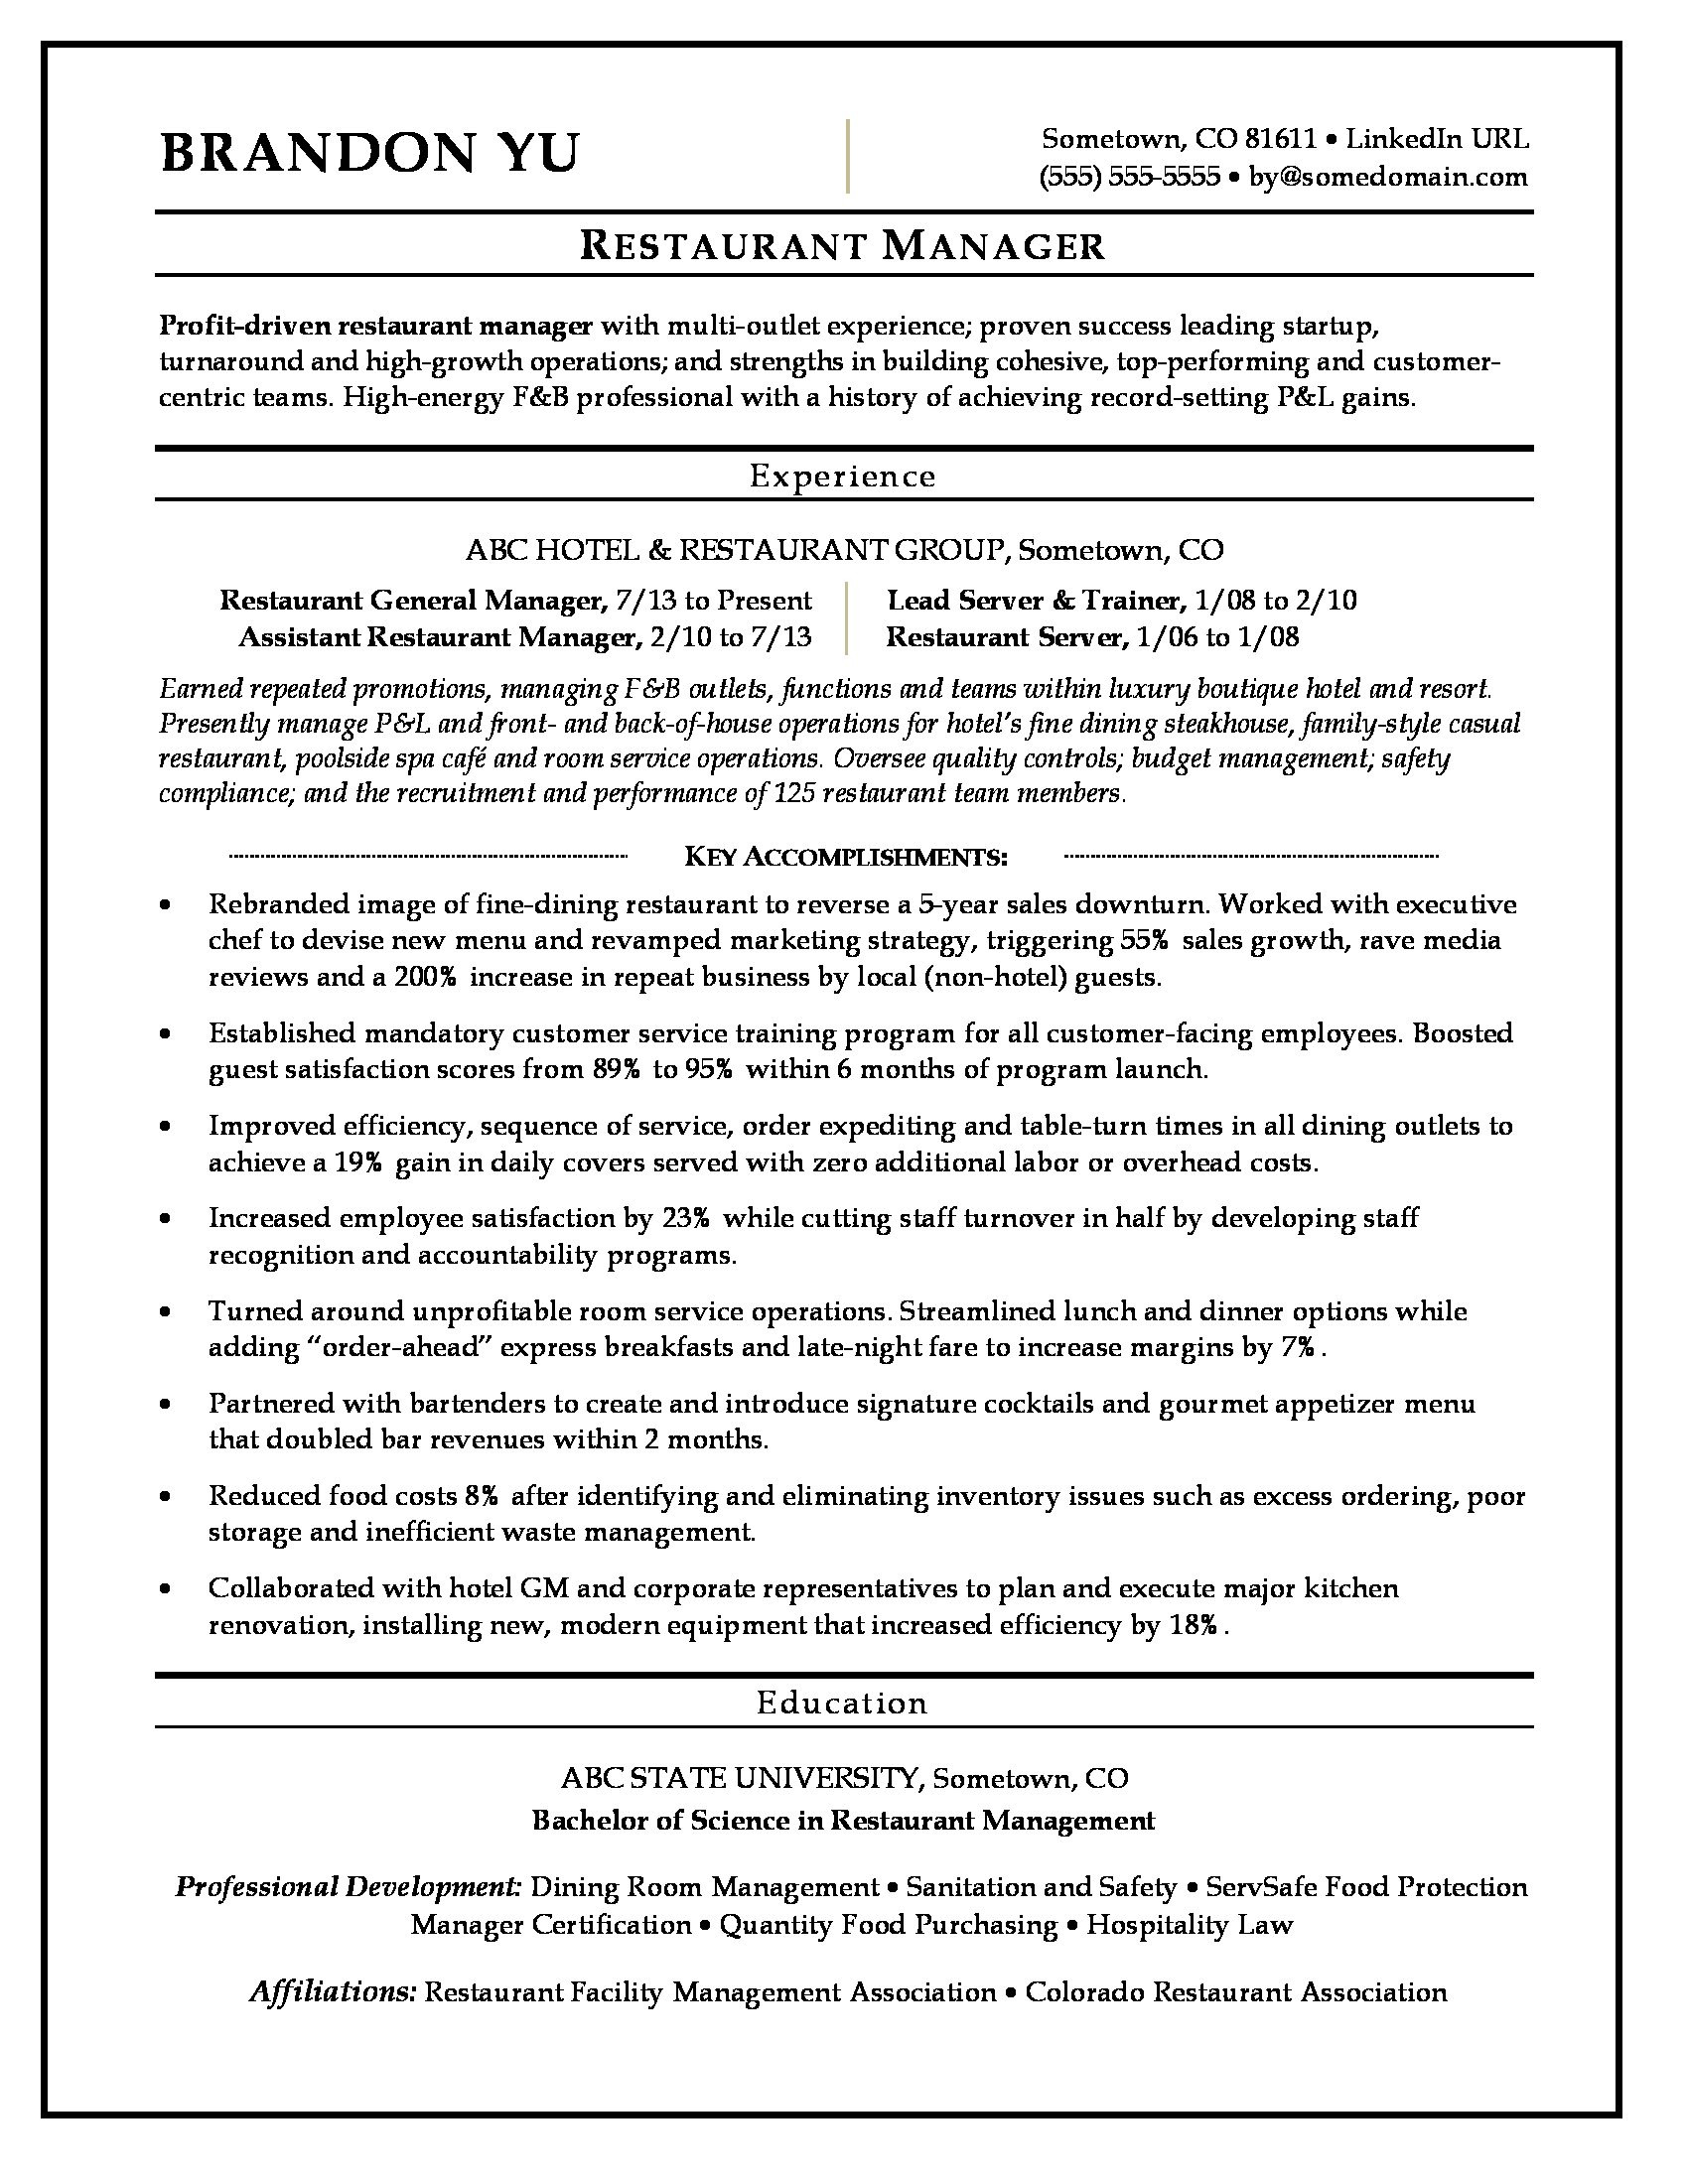 Resume format Sample for Restaurant Jobs Restaurant Manager Resume Monster.com